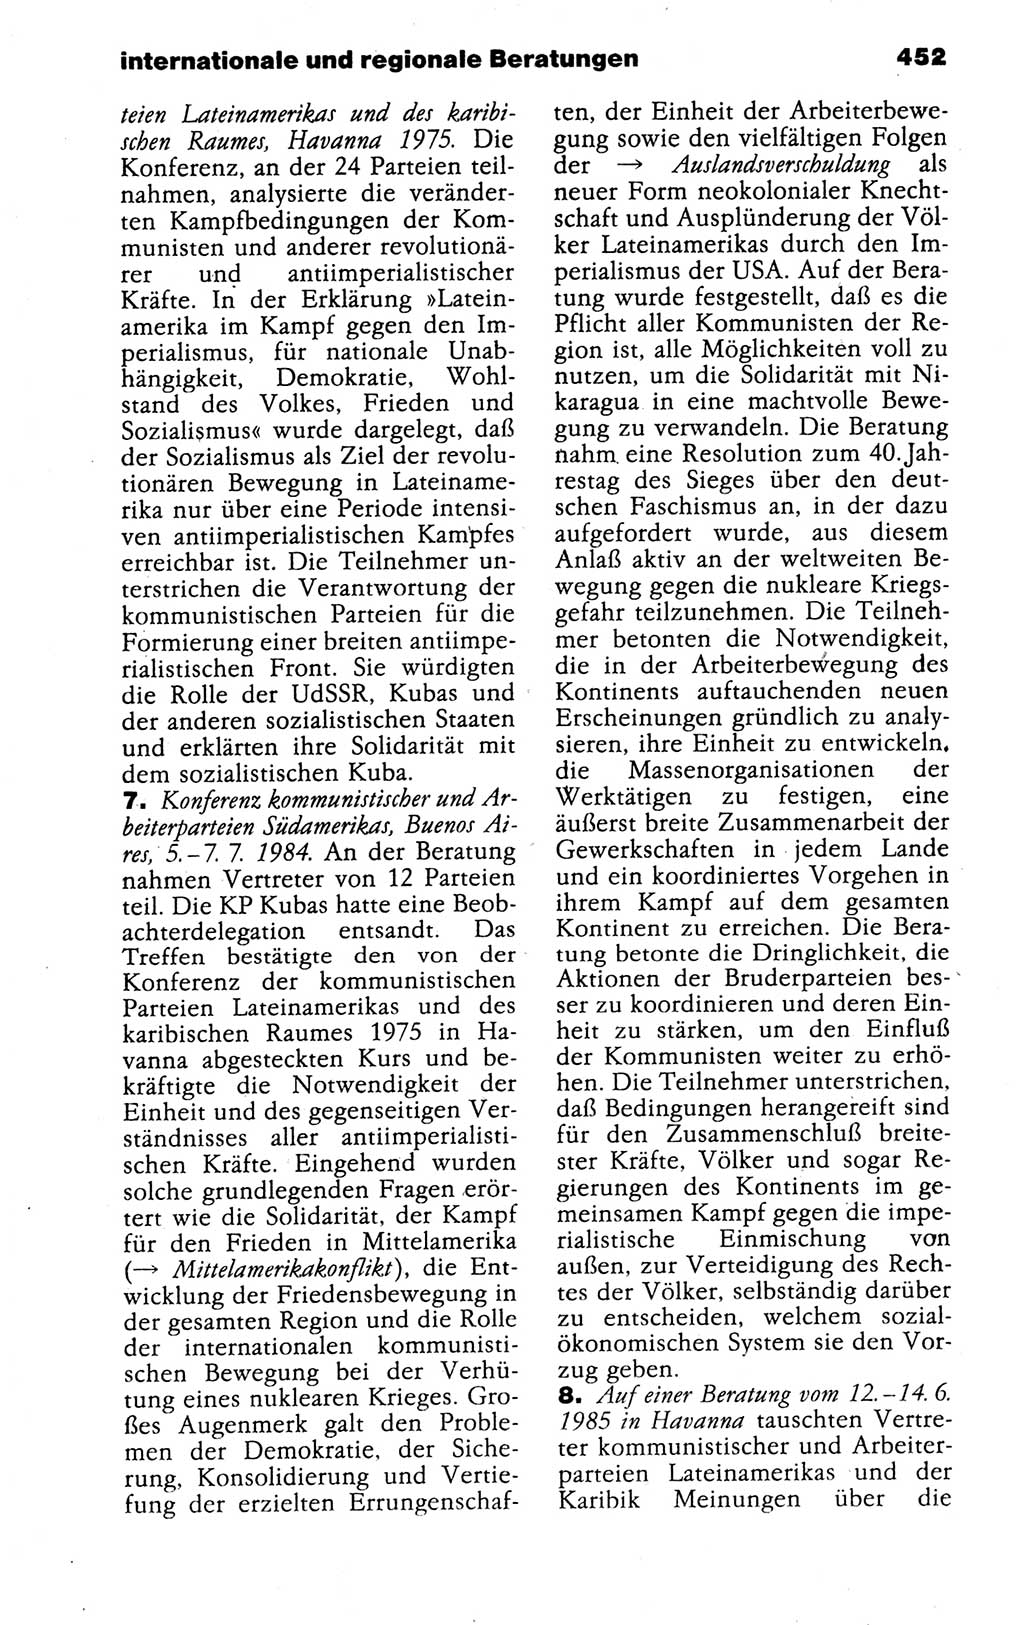 Kleines politisches Wörterbuch [Deutsche Demokratische Republik (DDR)] 1988, Seite 452 (Kl. pol. Wb. DDR 1988, S. 452)